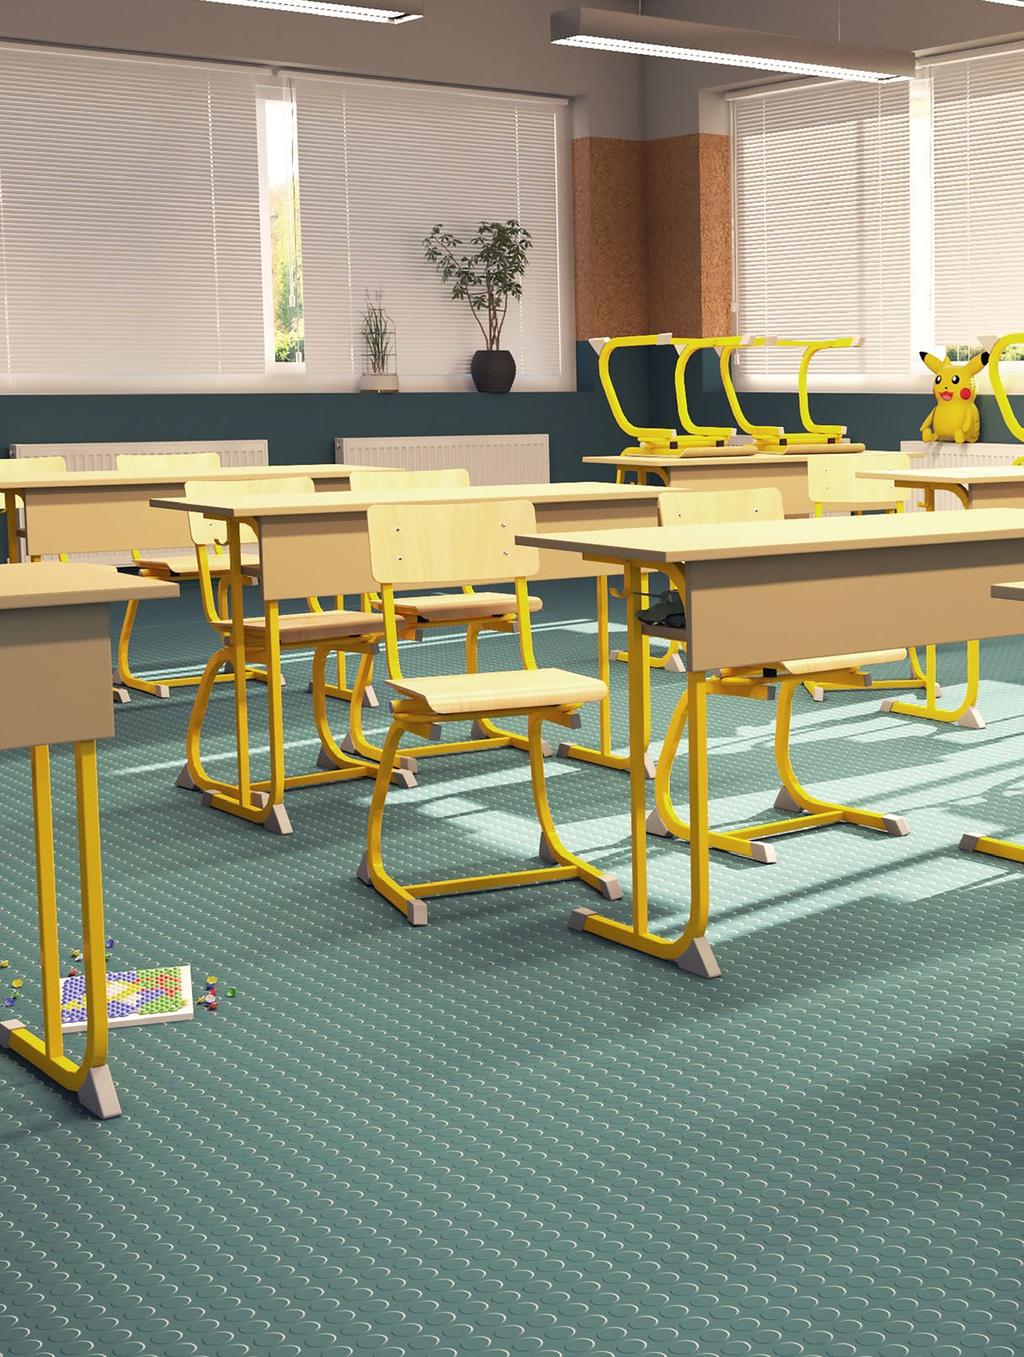 DHSZ hintamechanikás tanulószék Derby bútorcsalád DA2-LS 2 személyes tanulóasztal Derby asztalaink és székeink lábszerkezete 30x20-as zártszelvényből készül, melyet csúszásgátló műanyag papucsokkal